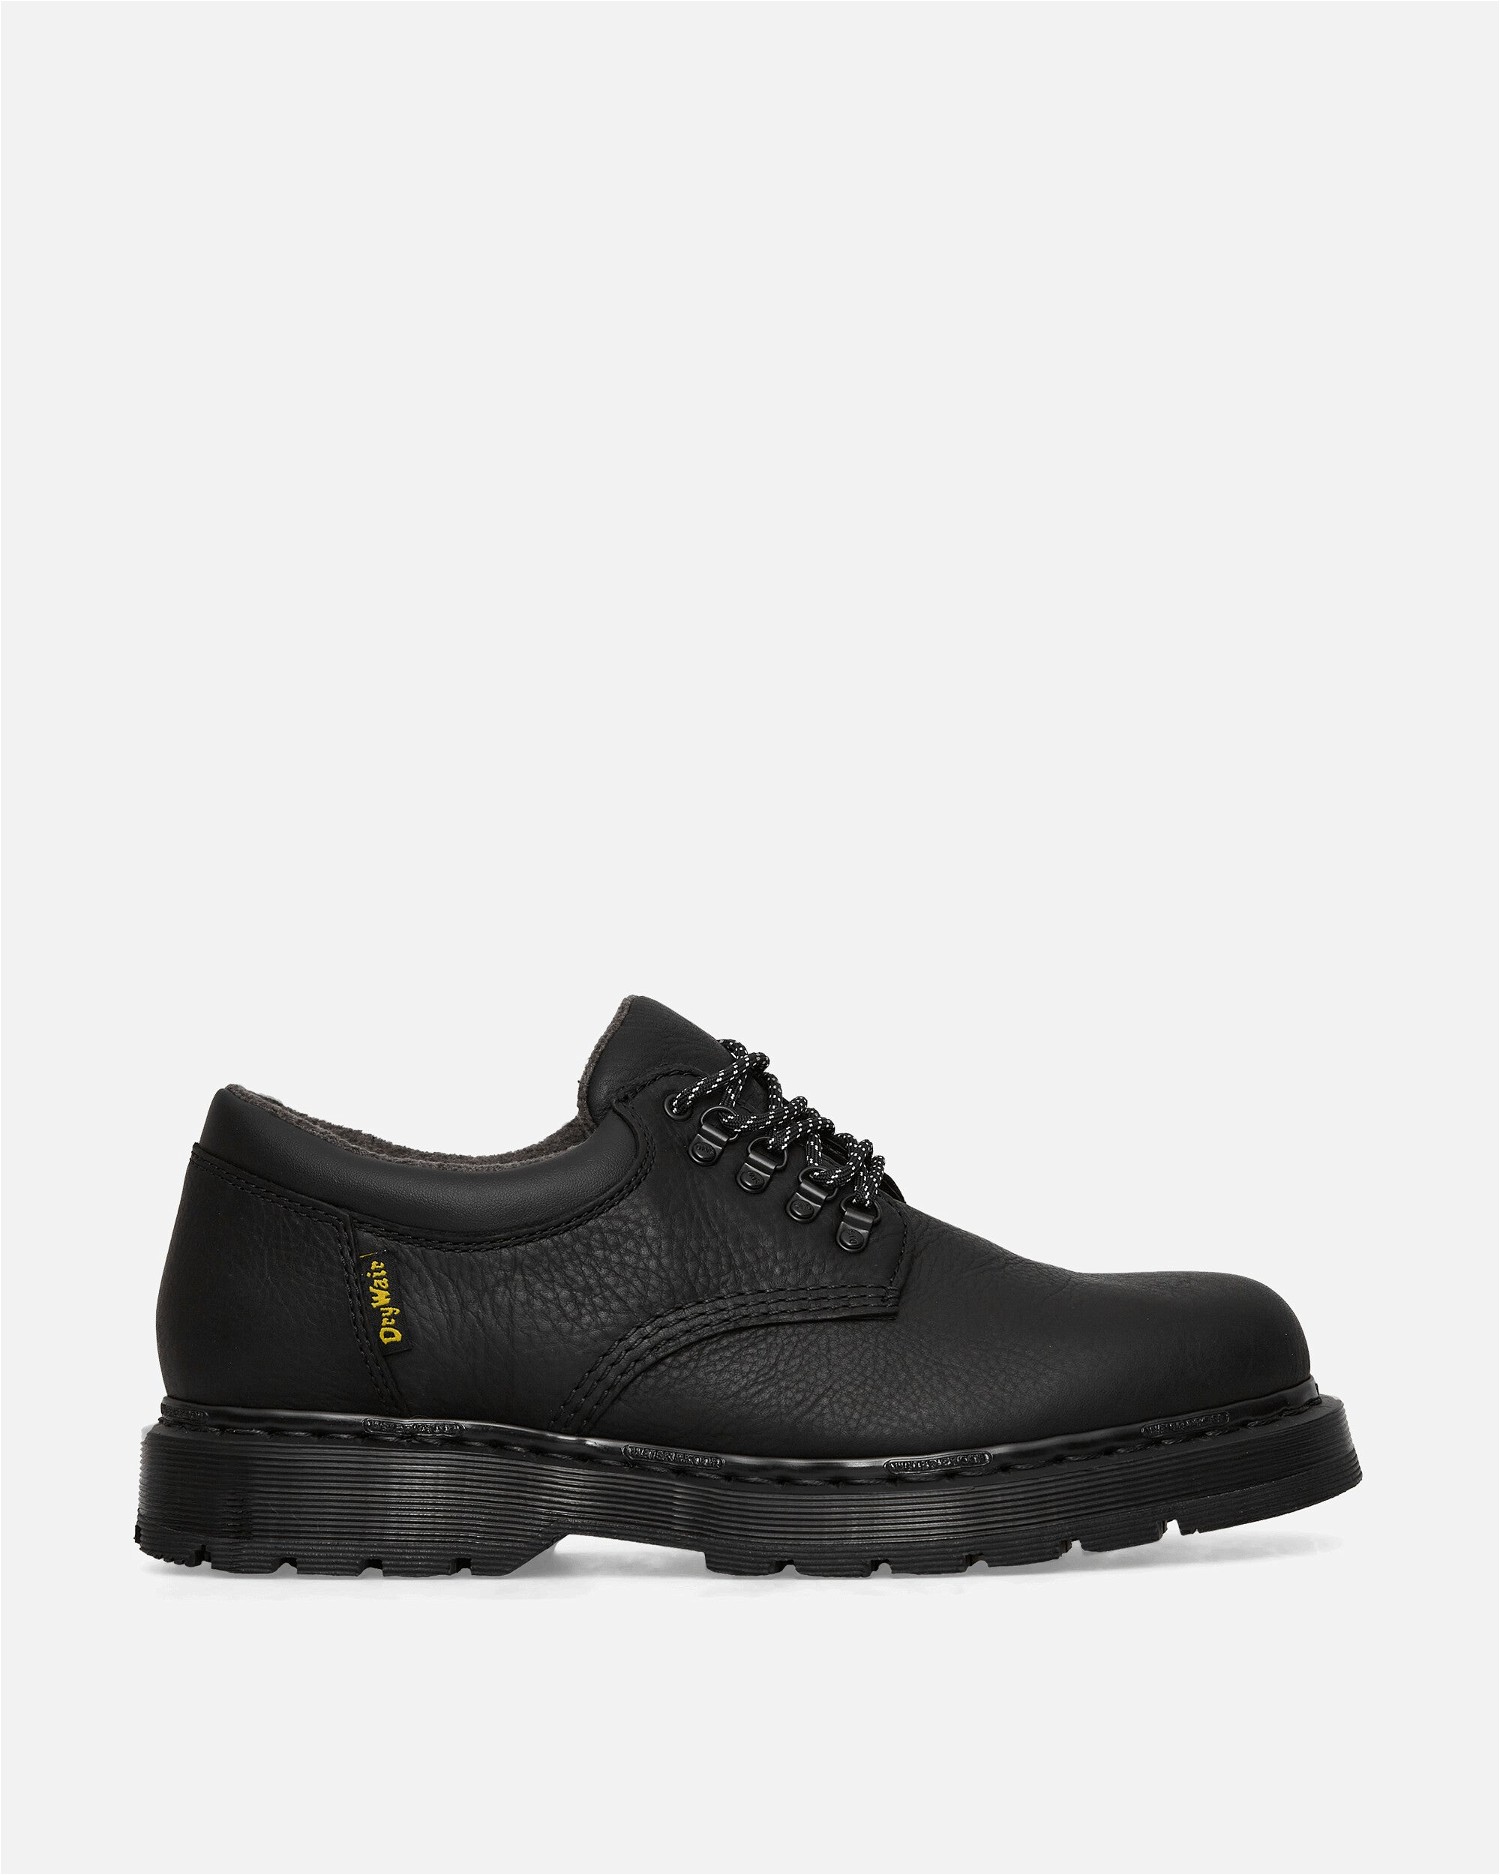 Sneakerek és cipők Dr. Martens 8053 Tailgate WP Shoes Fekete | 31195001 001, 0